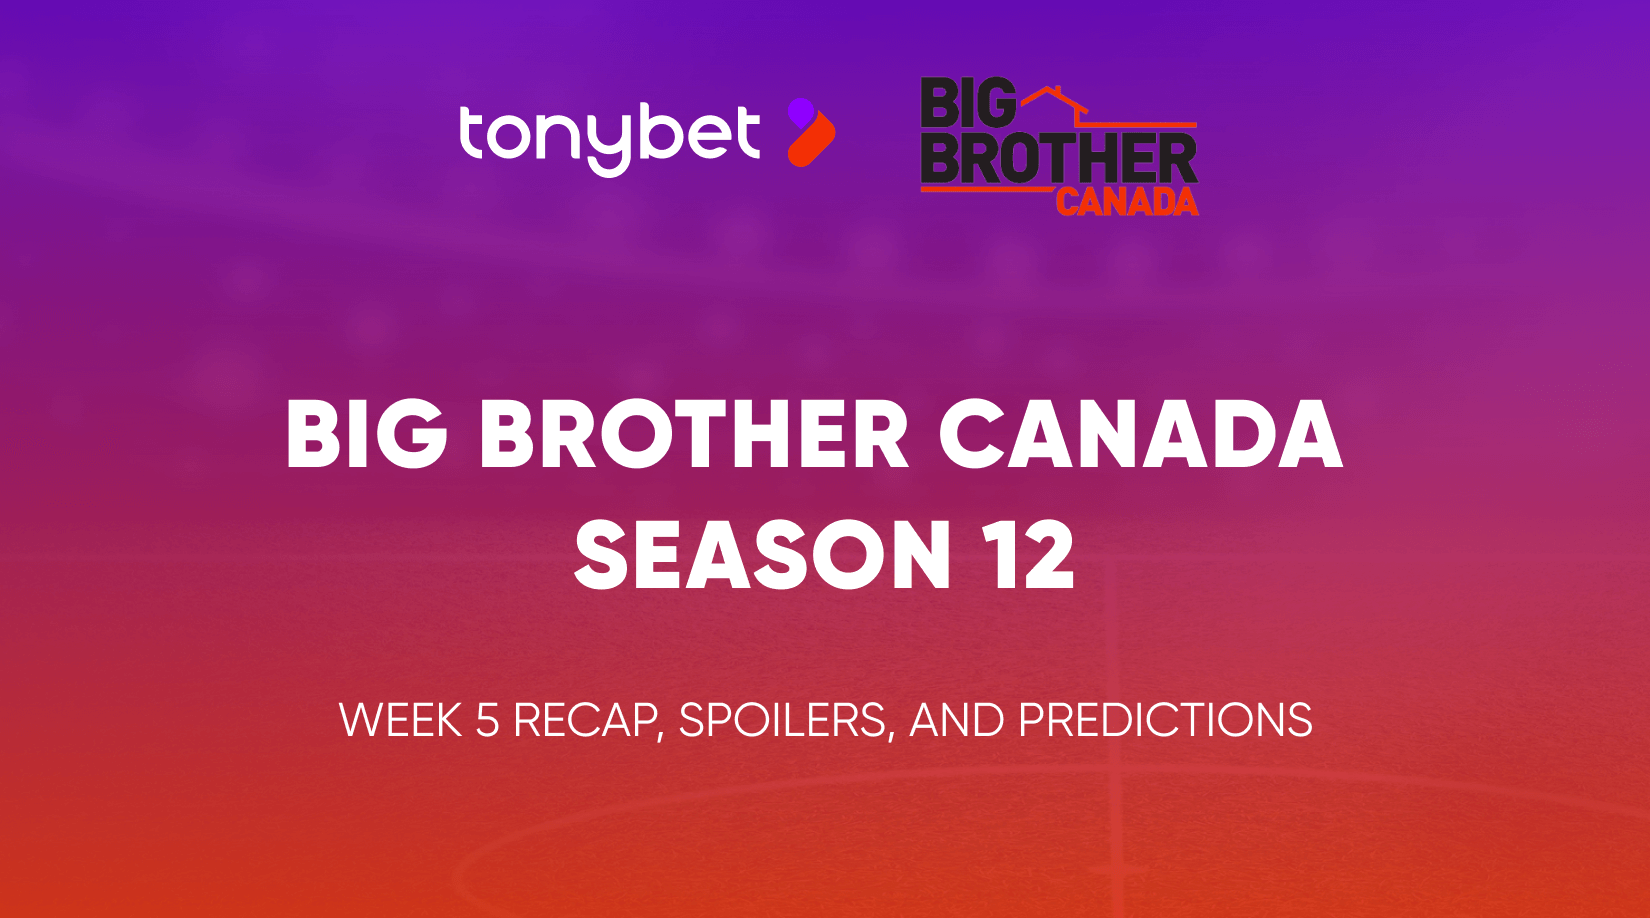 Big Brother Canada Season 12 Week 5 Recap, Spoilers, and Predictions